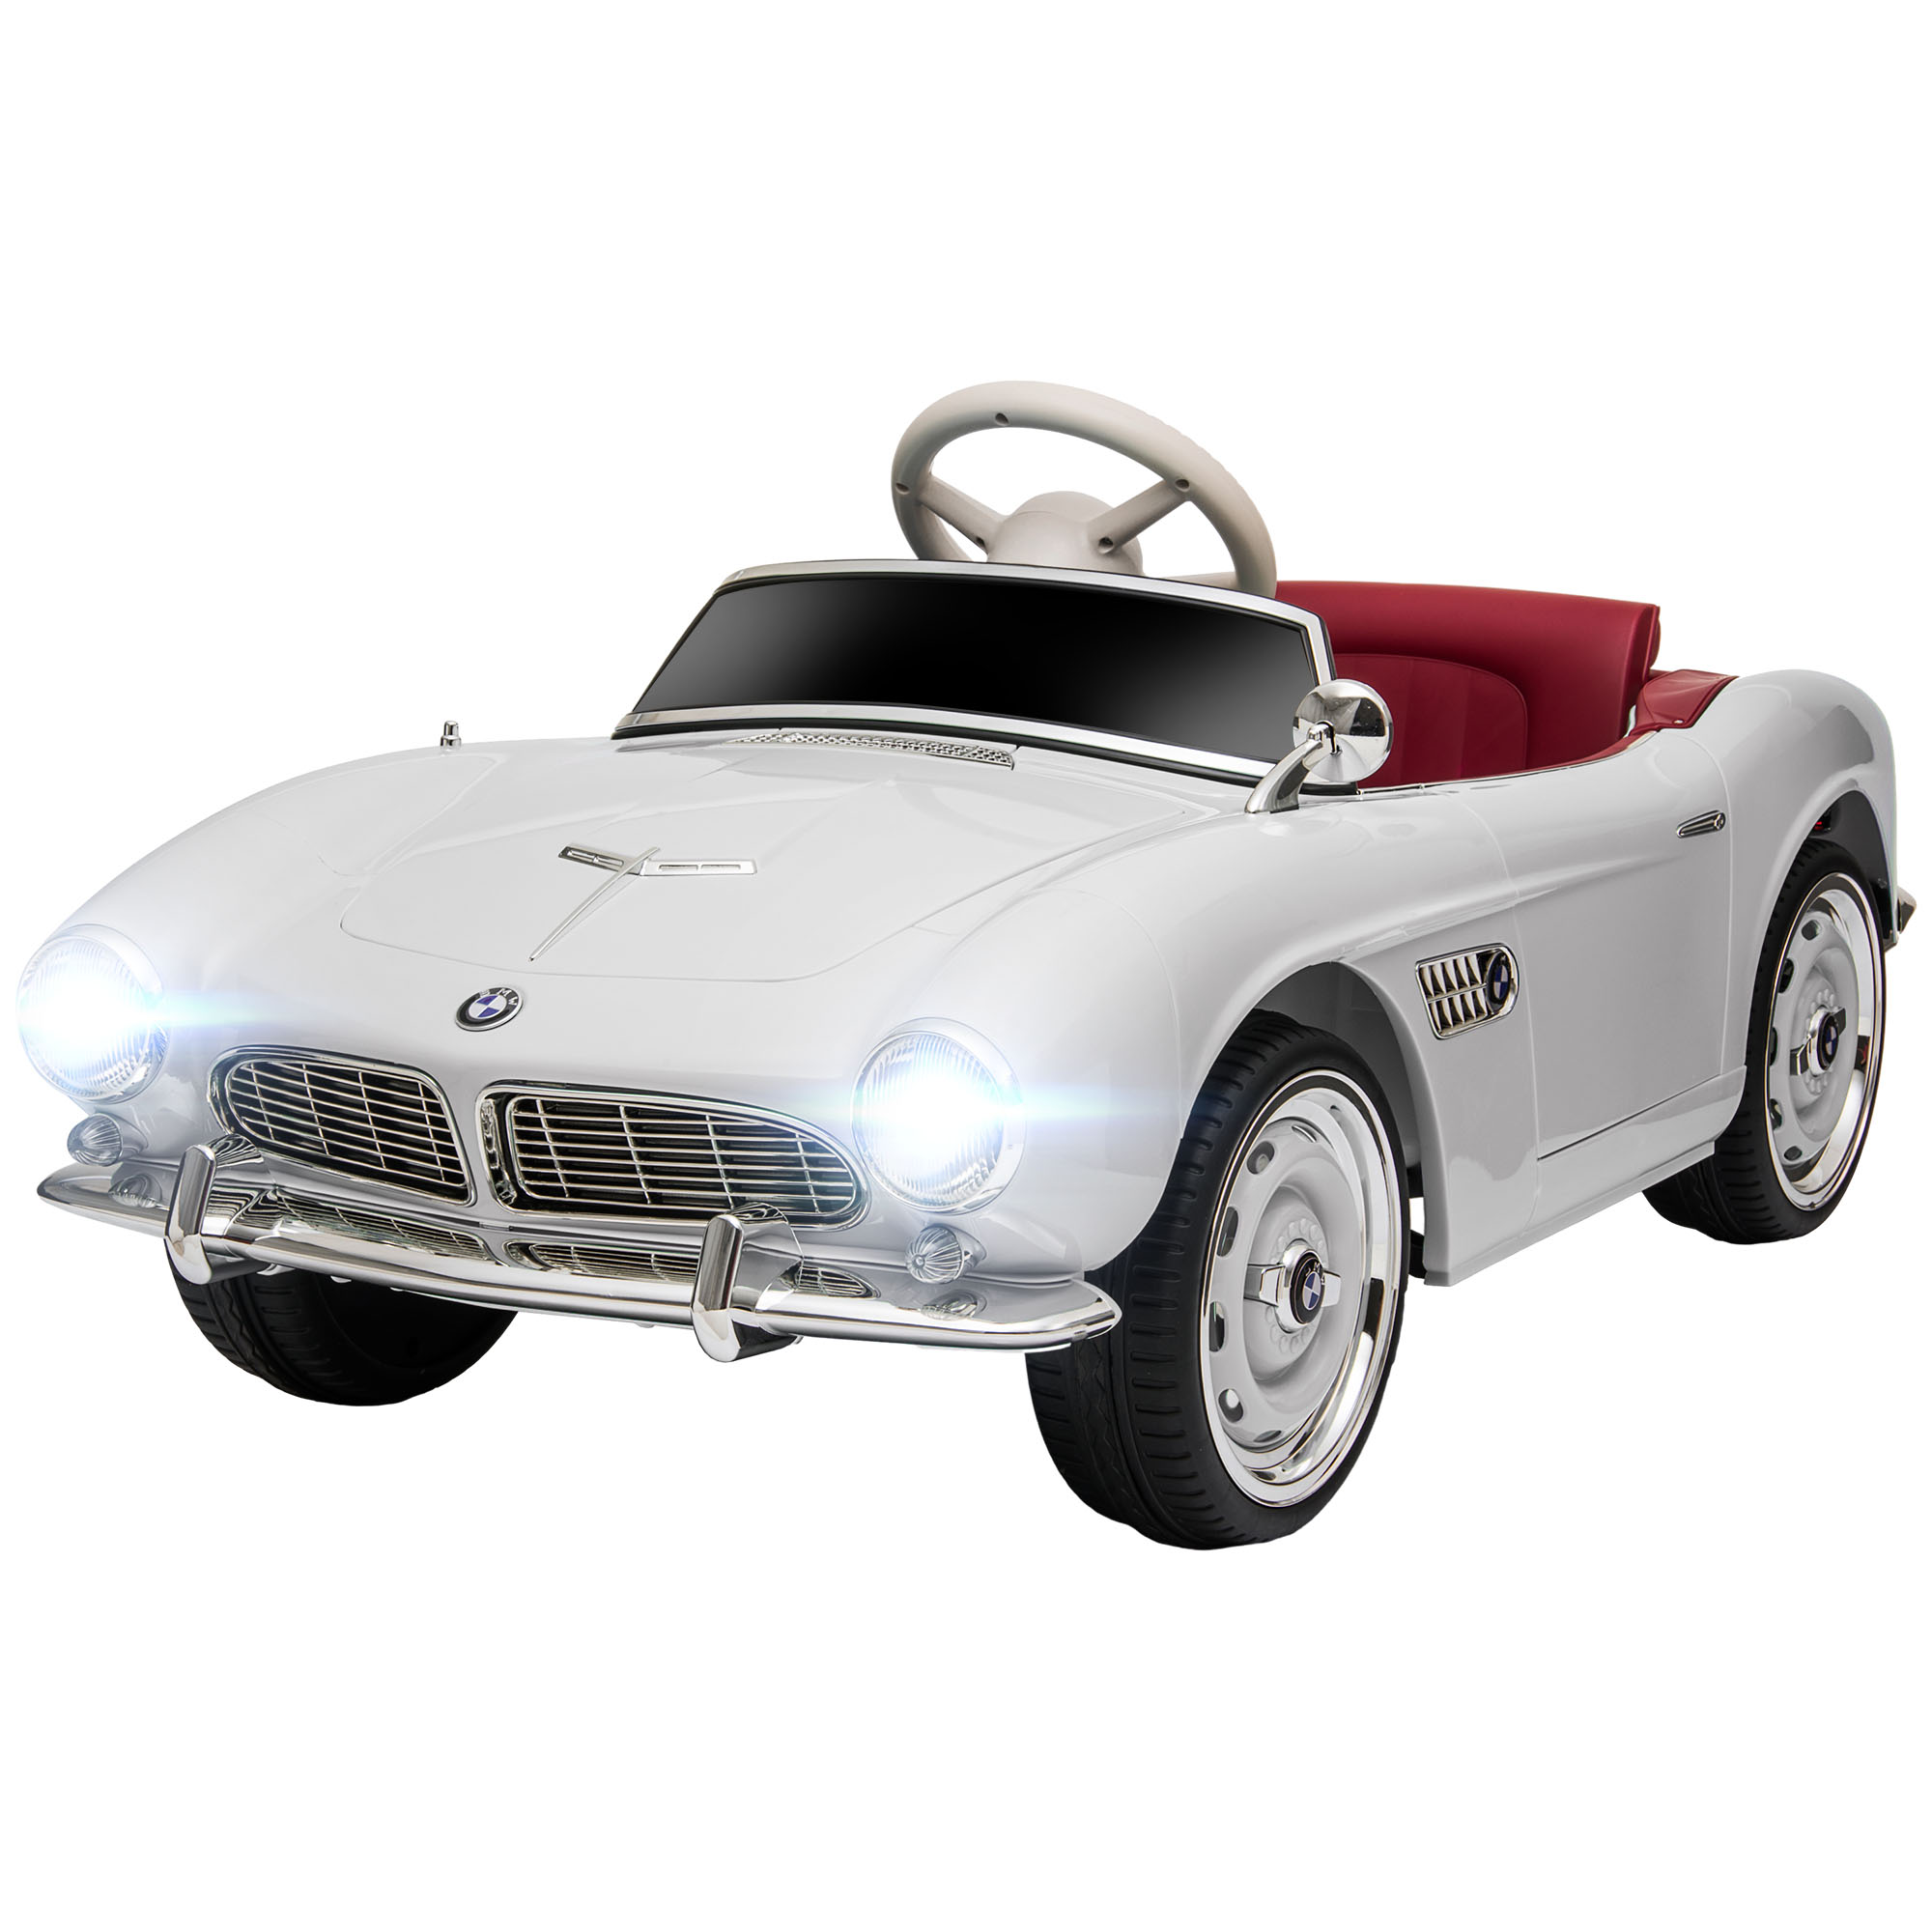 HOMCOM Electric Ride-On Toy Car για Παιδιά με 2 Πόρτες με άδεια BMW 507